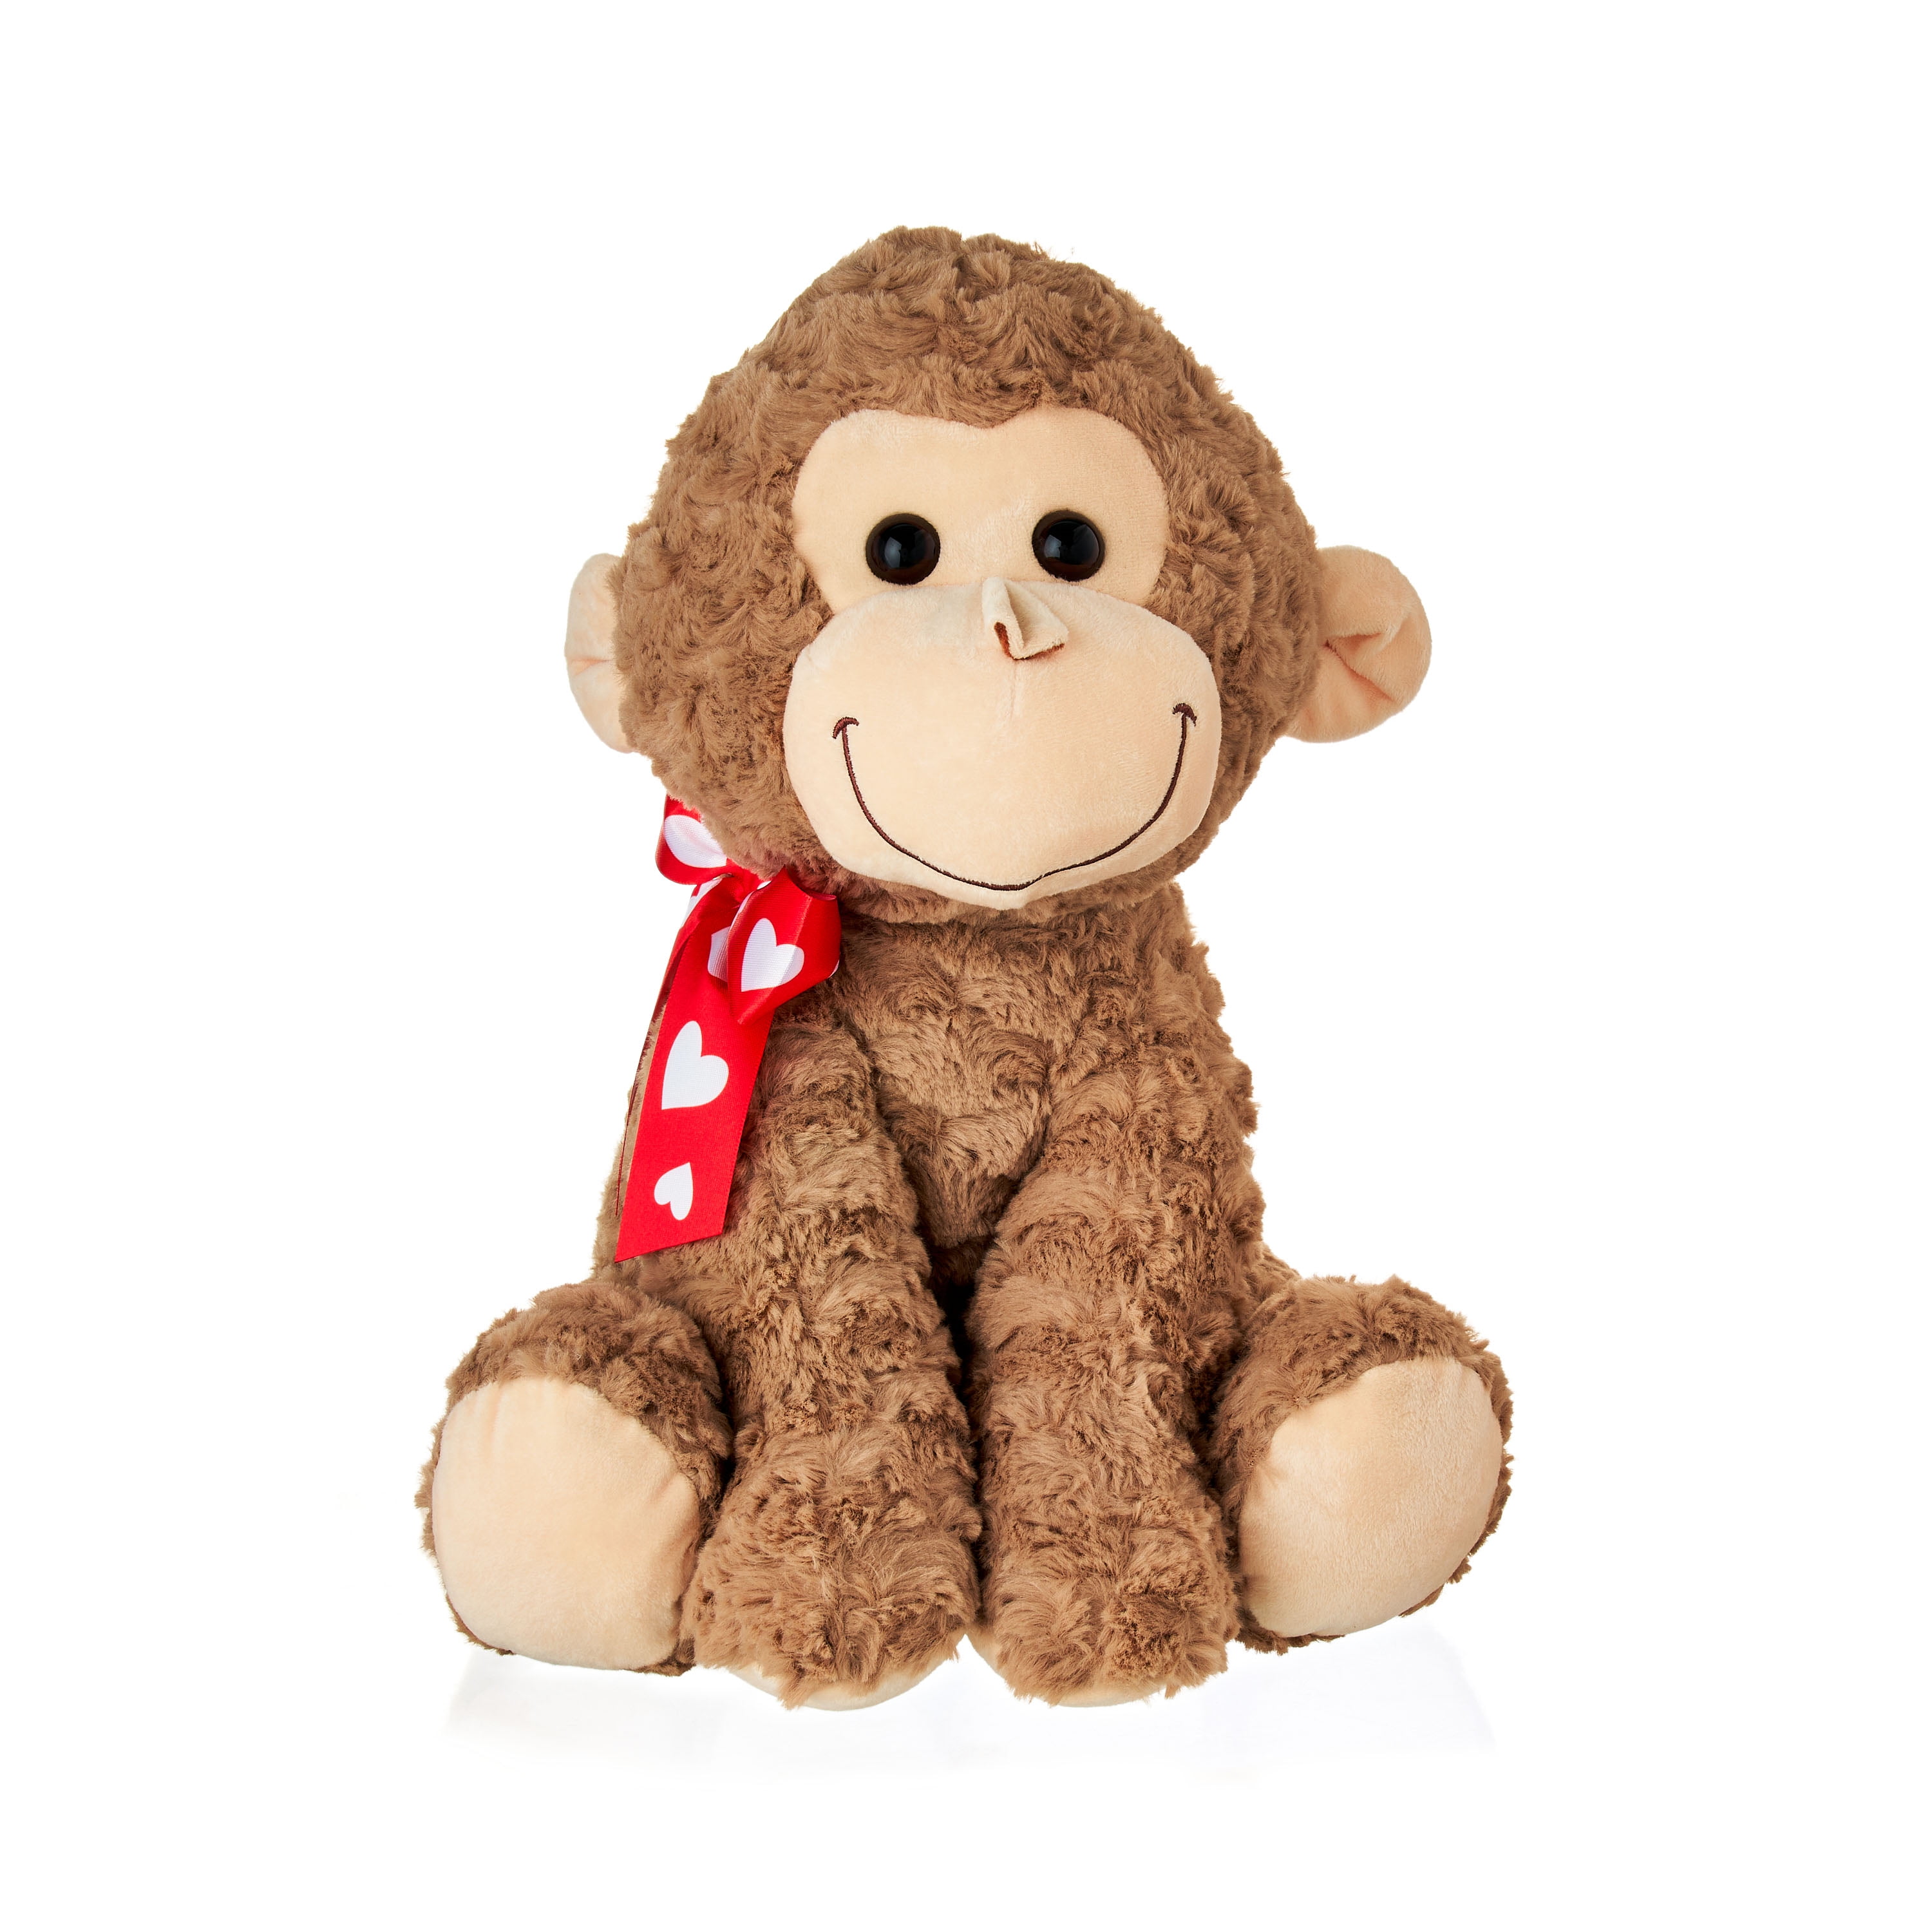 2022-wdw-dak-what's new-mombasa marketplace-stuffed animal-plush-monkey